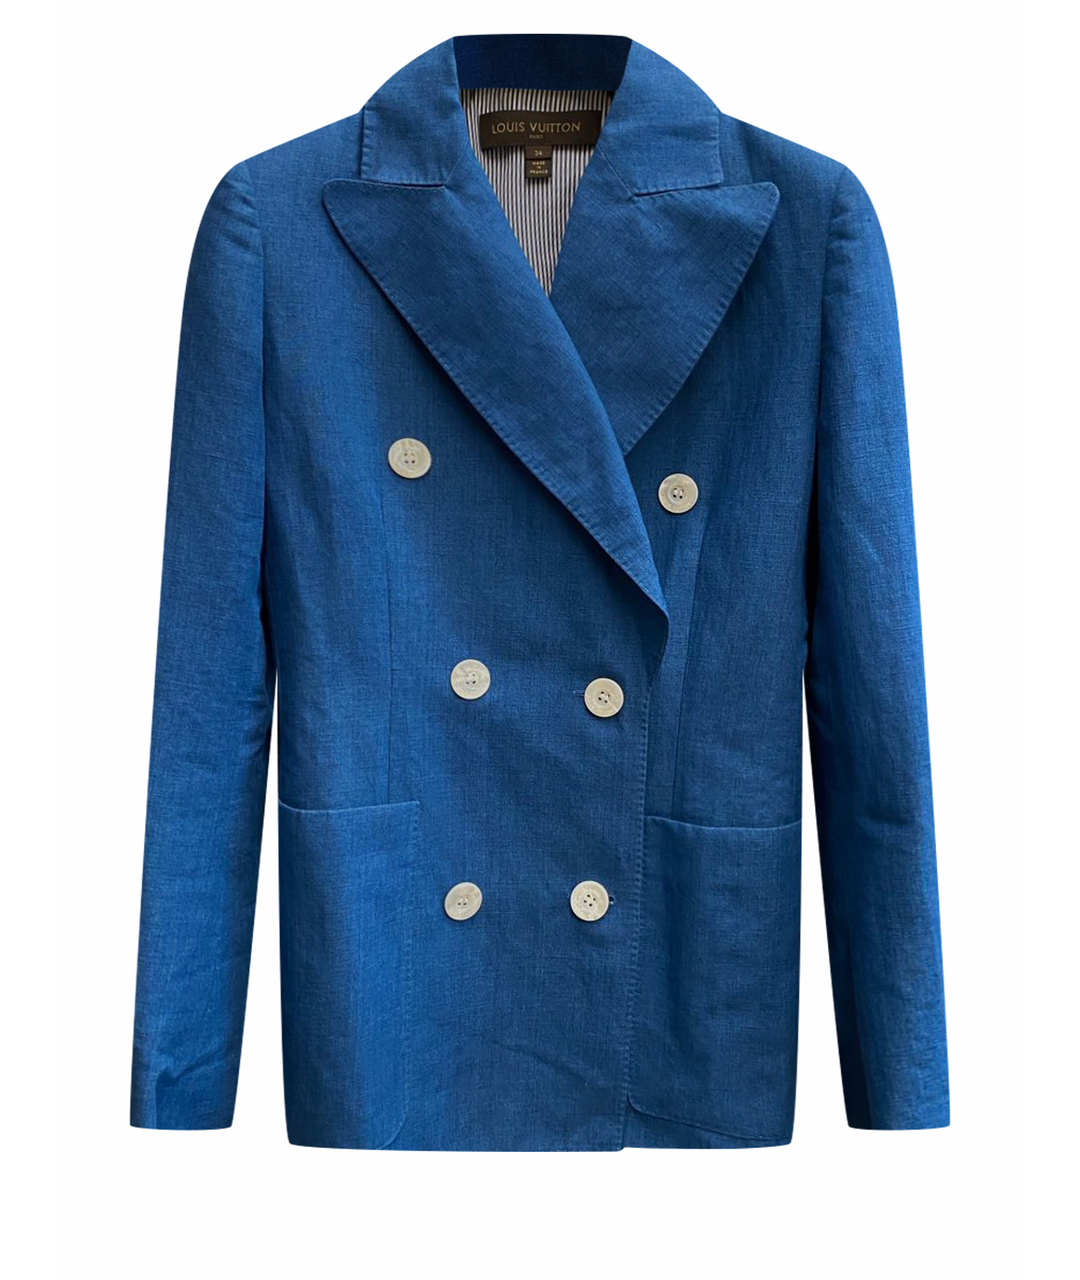 LOUIS VUITTON PRE-OWNED Голубой льняной жакет/пиджак, фото 1